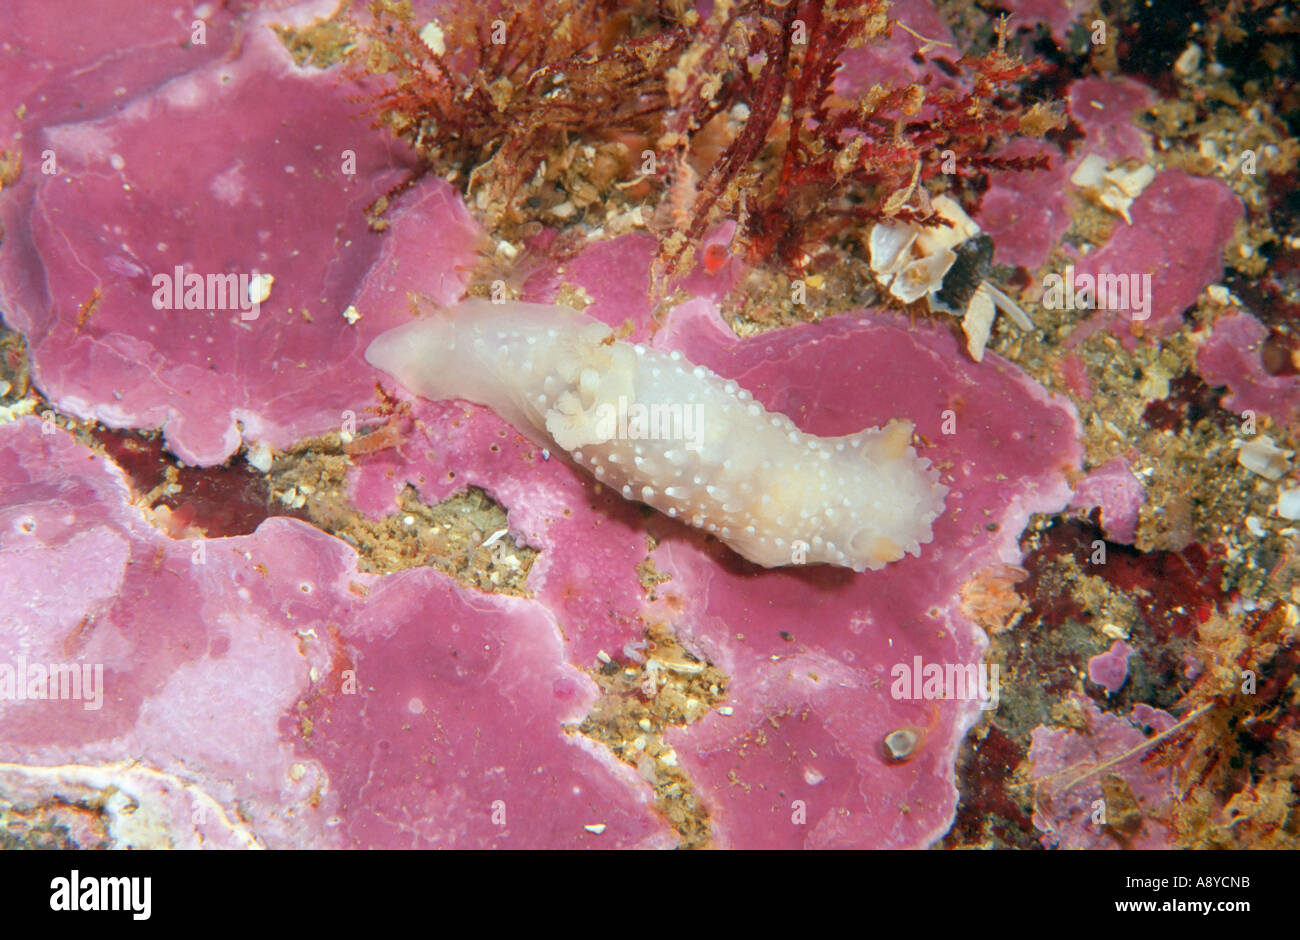 White sea slug Colga minichevi (Mollusca, Gastropoda) on red coralline alga encrusting a stone. North Pacific, Underwater Stock Photo